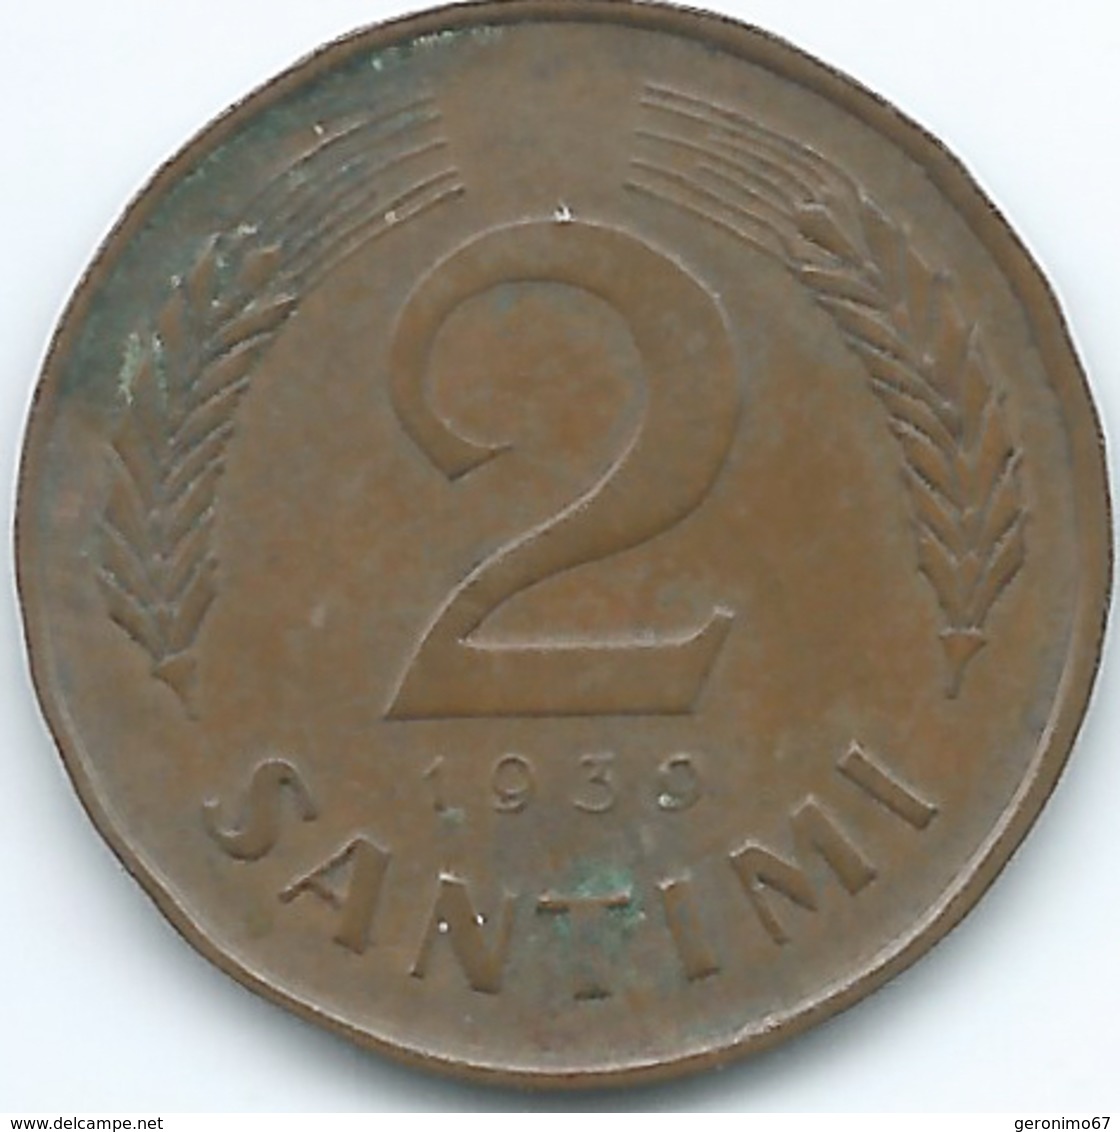 Latvia - 1st Republic - 2 Santimi - 1939 (KM11) - Latvia